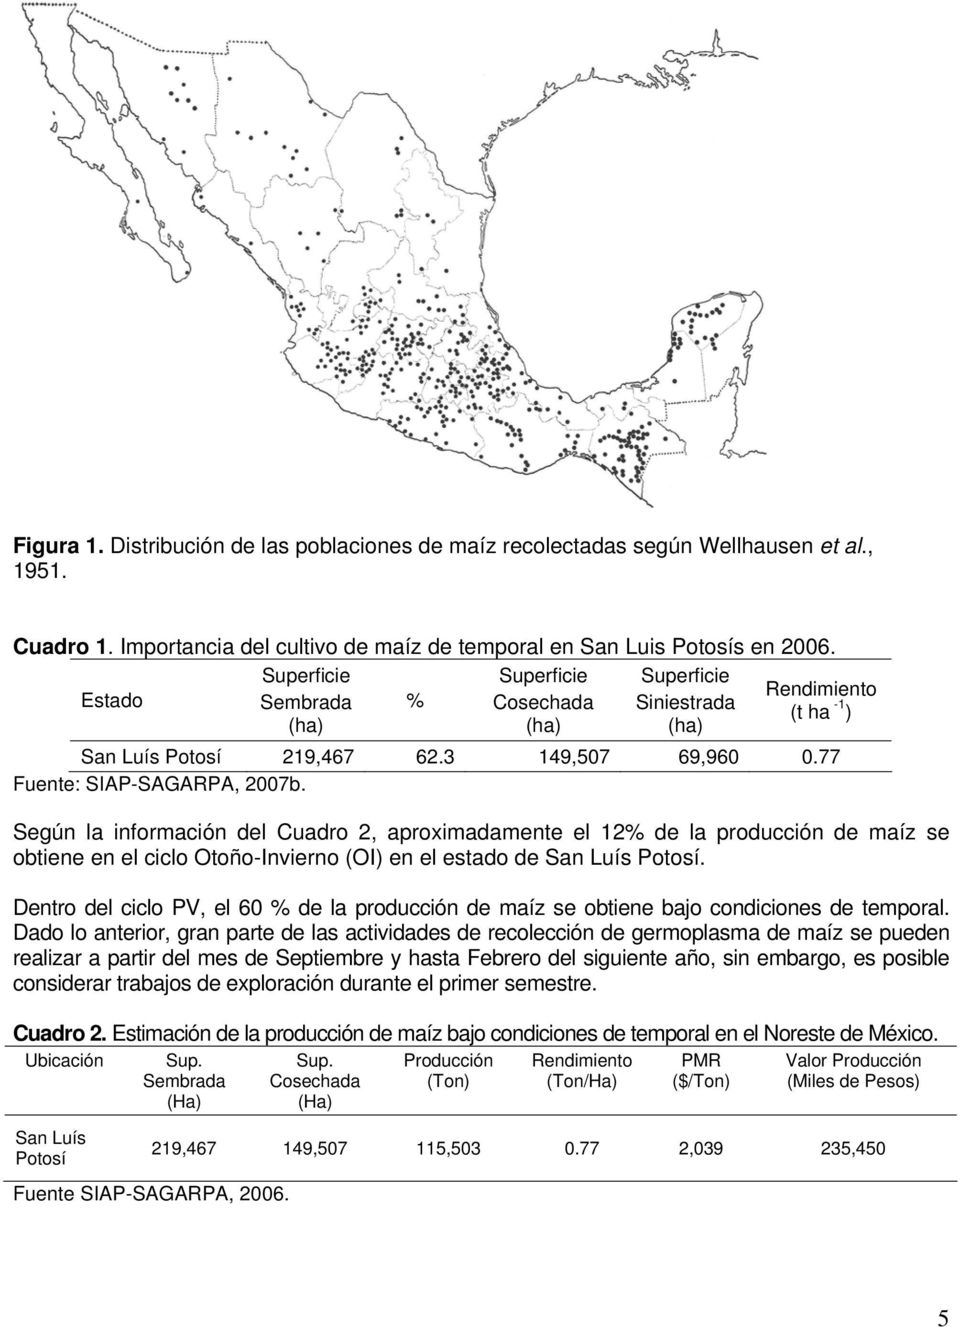 Según la información del Cuadro 2, aproximadamente el 12% de la producción de maíz se obtiene en el ciclo Otoño-Invierno (OI) en el estado de San Luís Potosí.